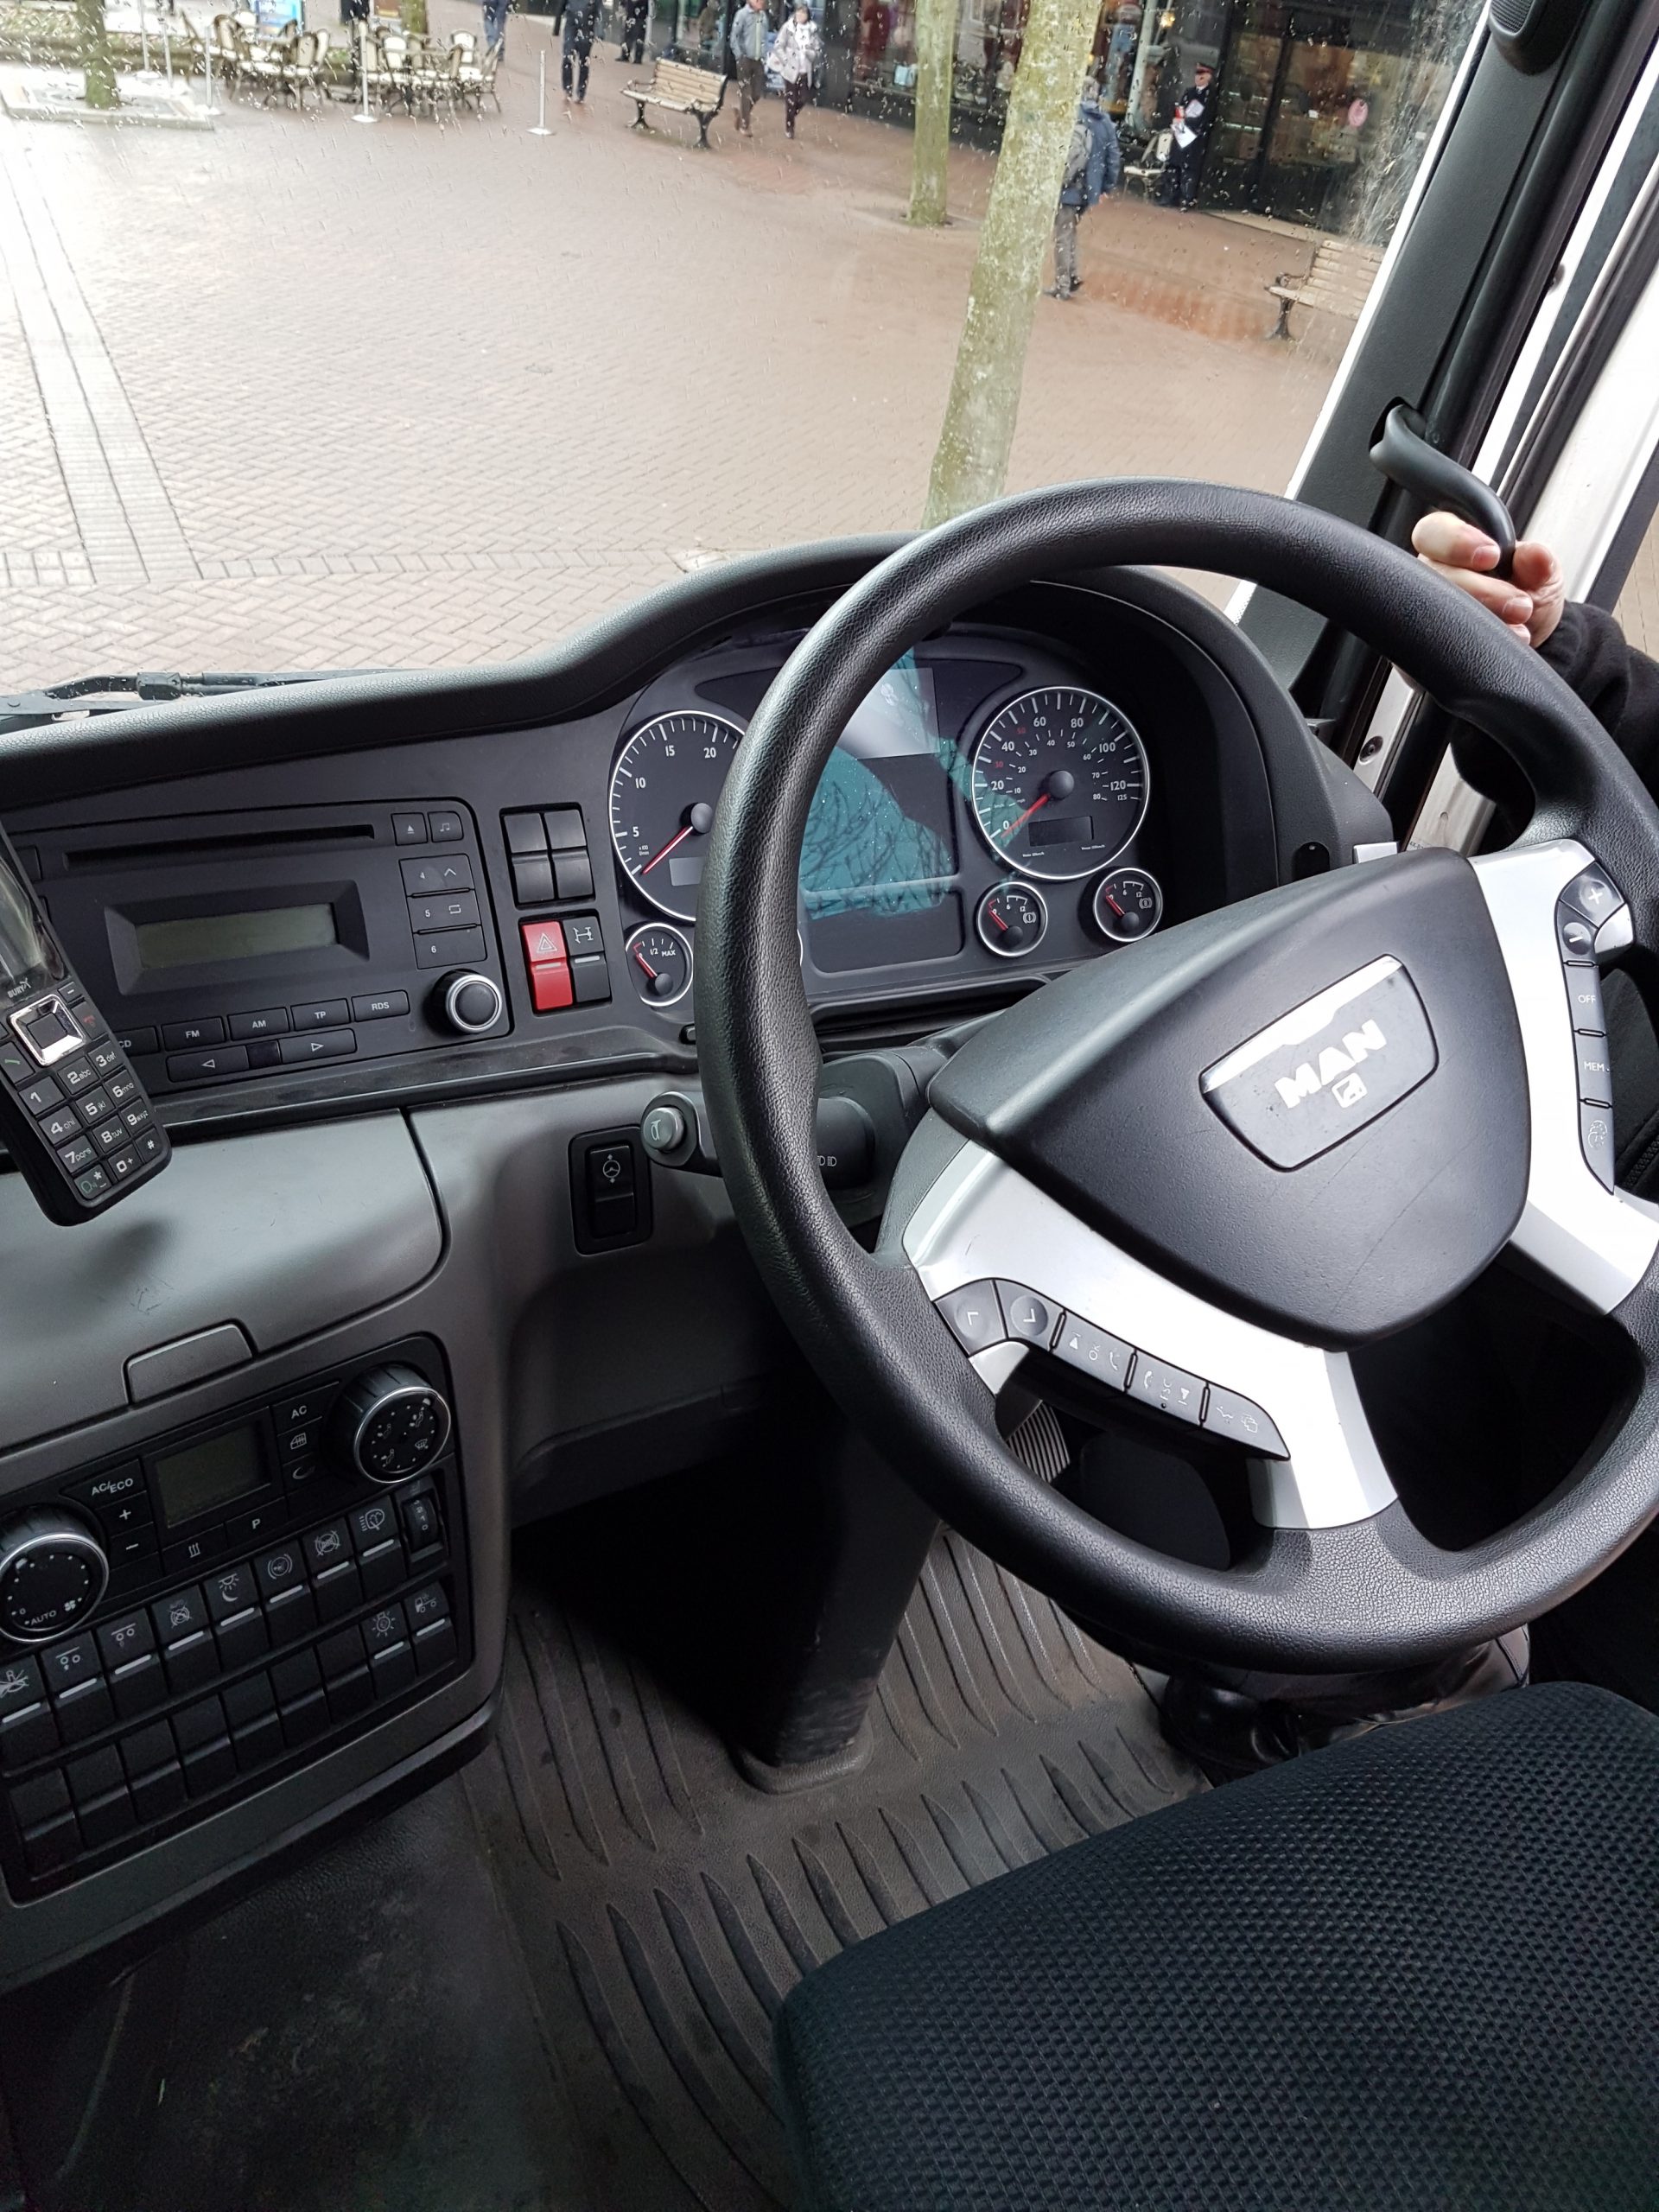 Lorry steering wheel